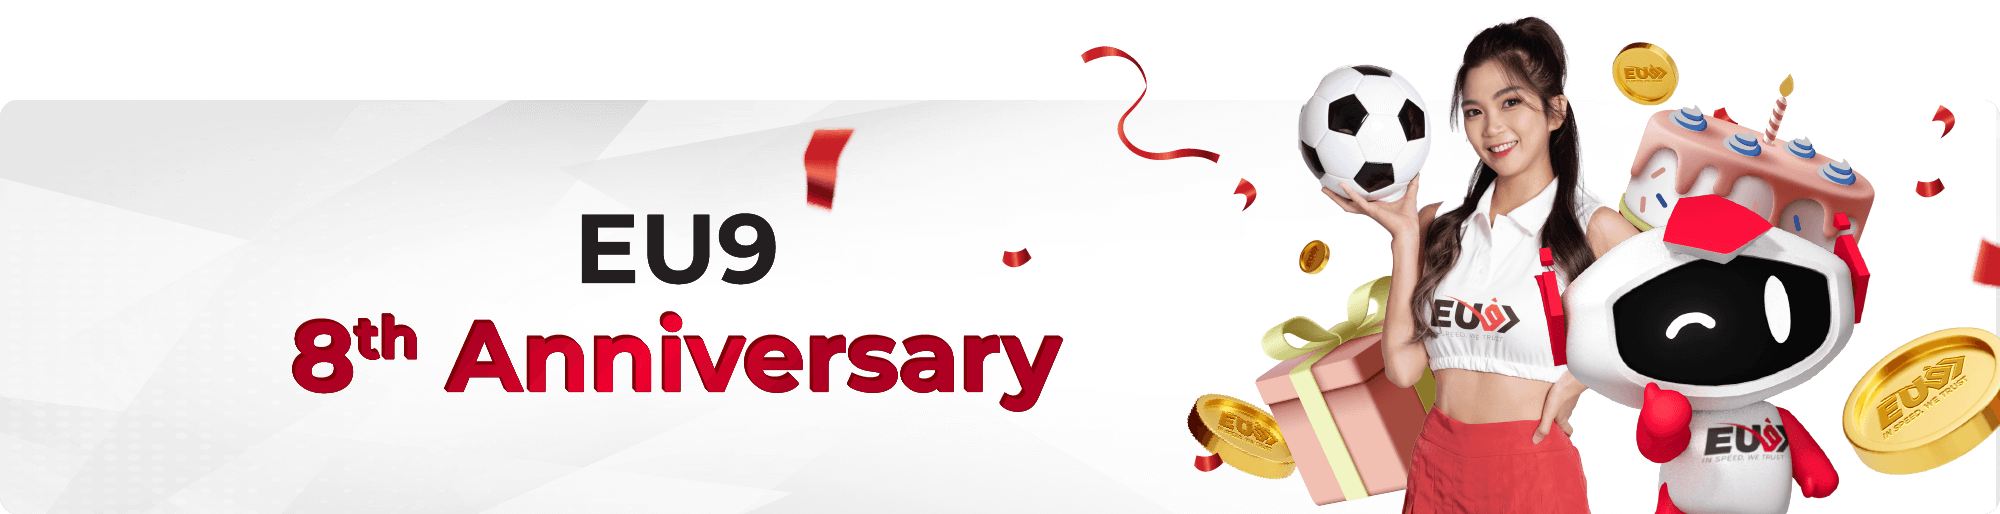 EU9's 8th Anniversary